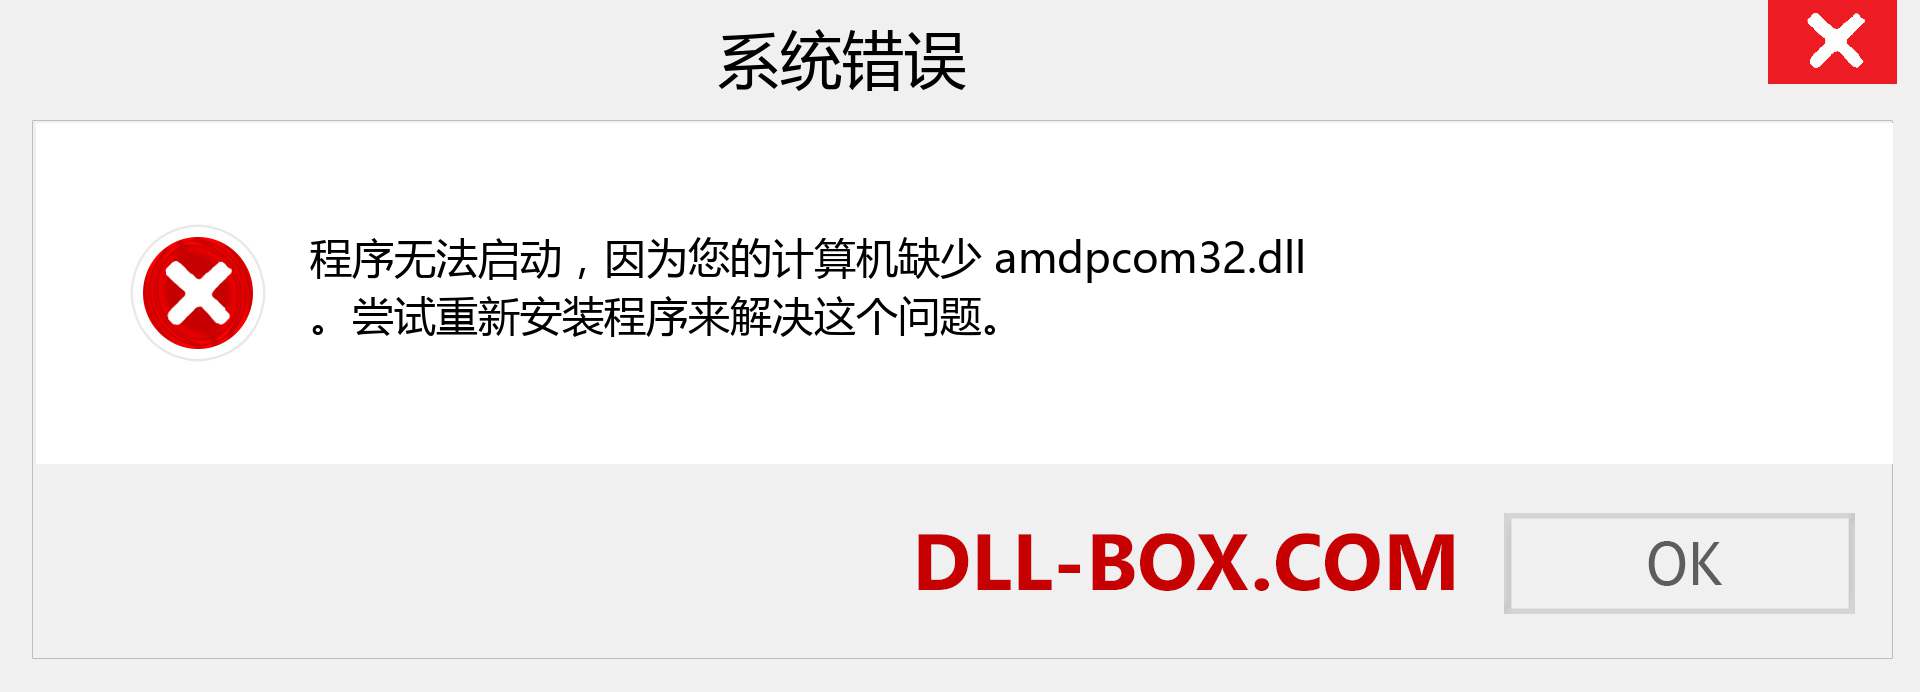 amdpcom32.dll 文件丢失？。 适用于 Windows 7、8、10 的下载 - 修复 Windows、照片、图像上的 amdpcom32 dll 丢失错误